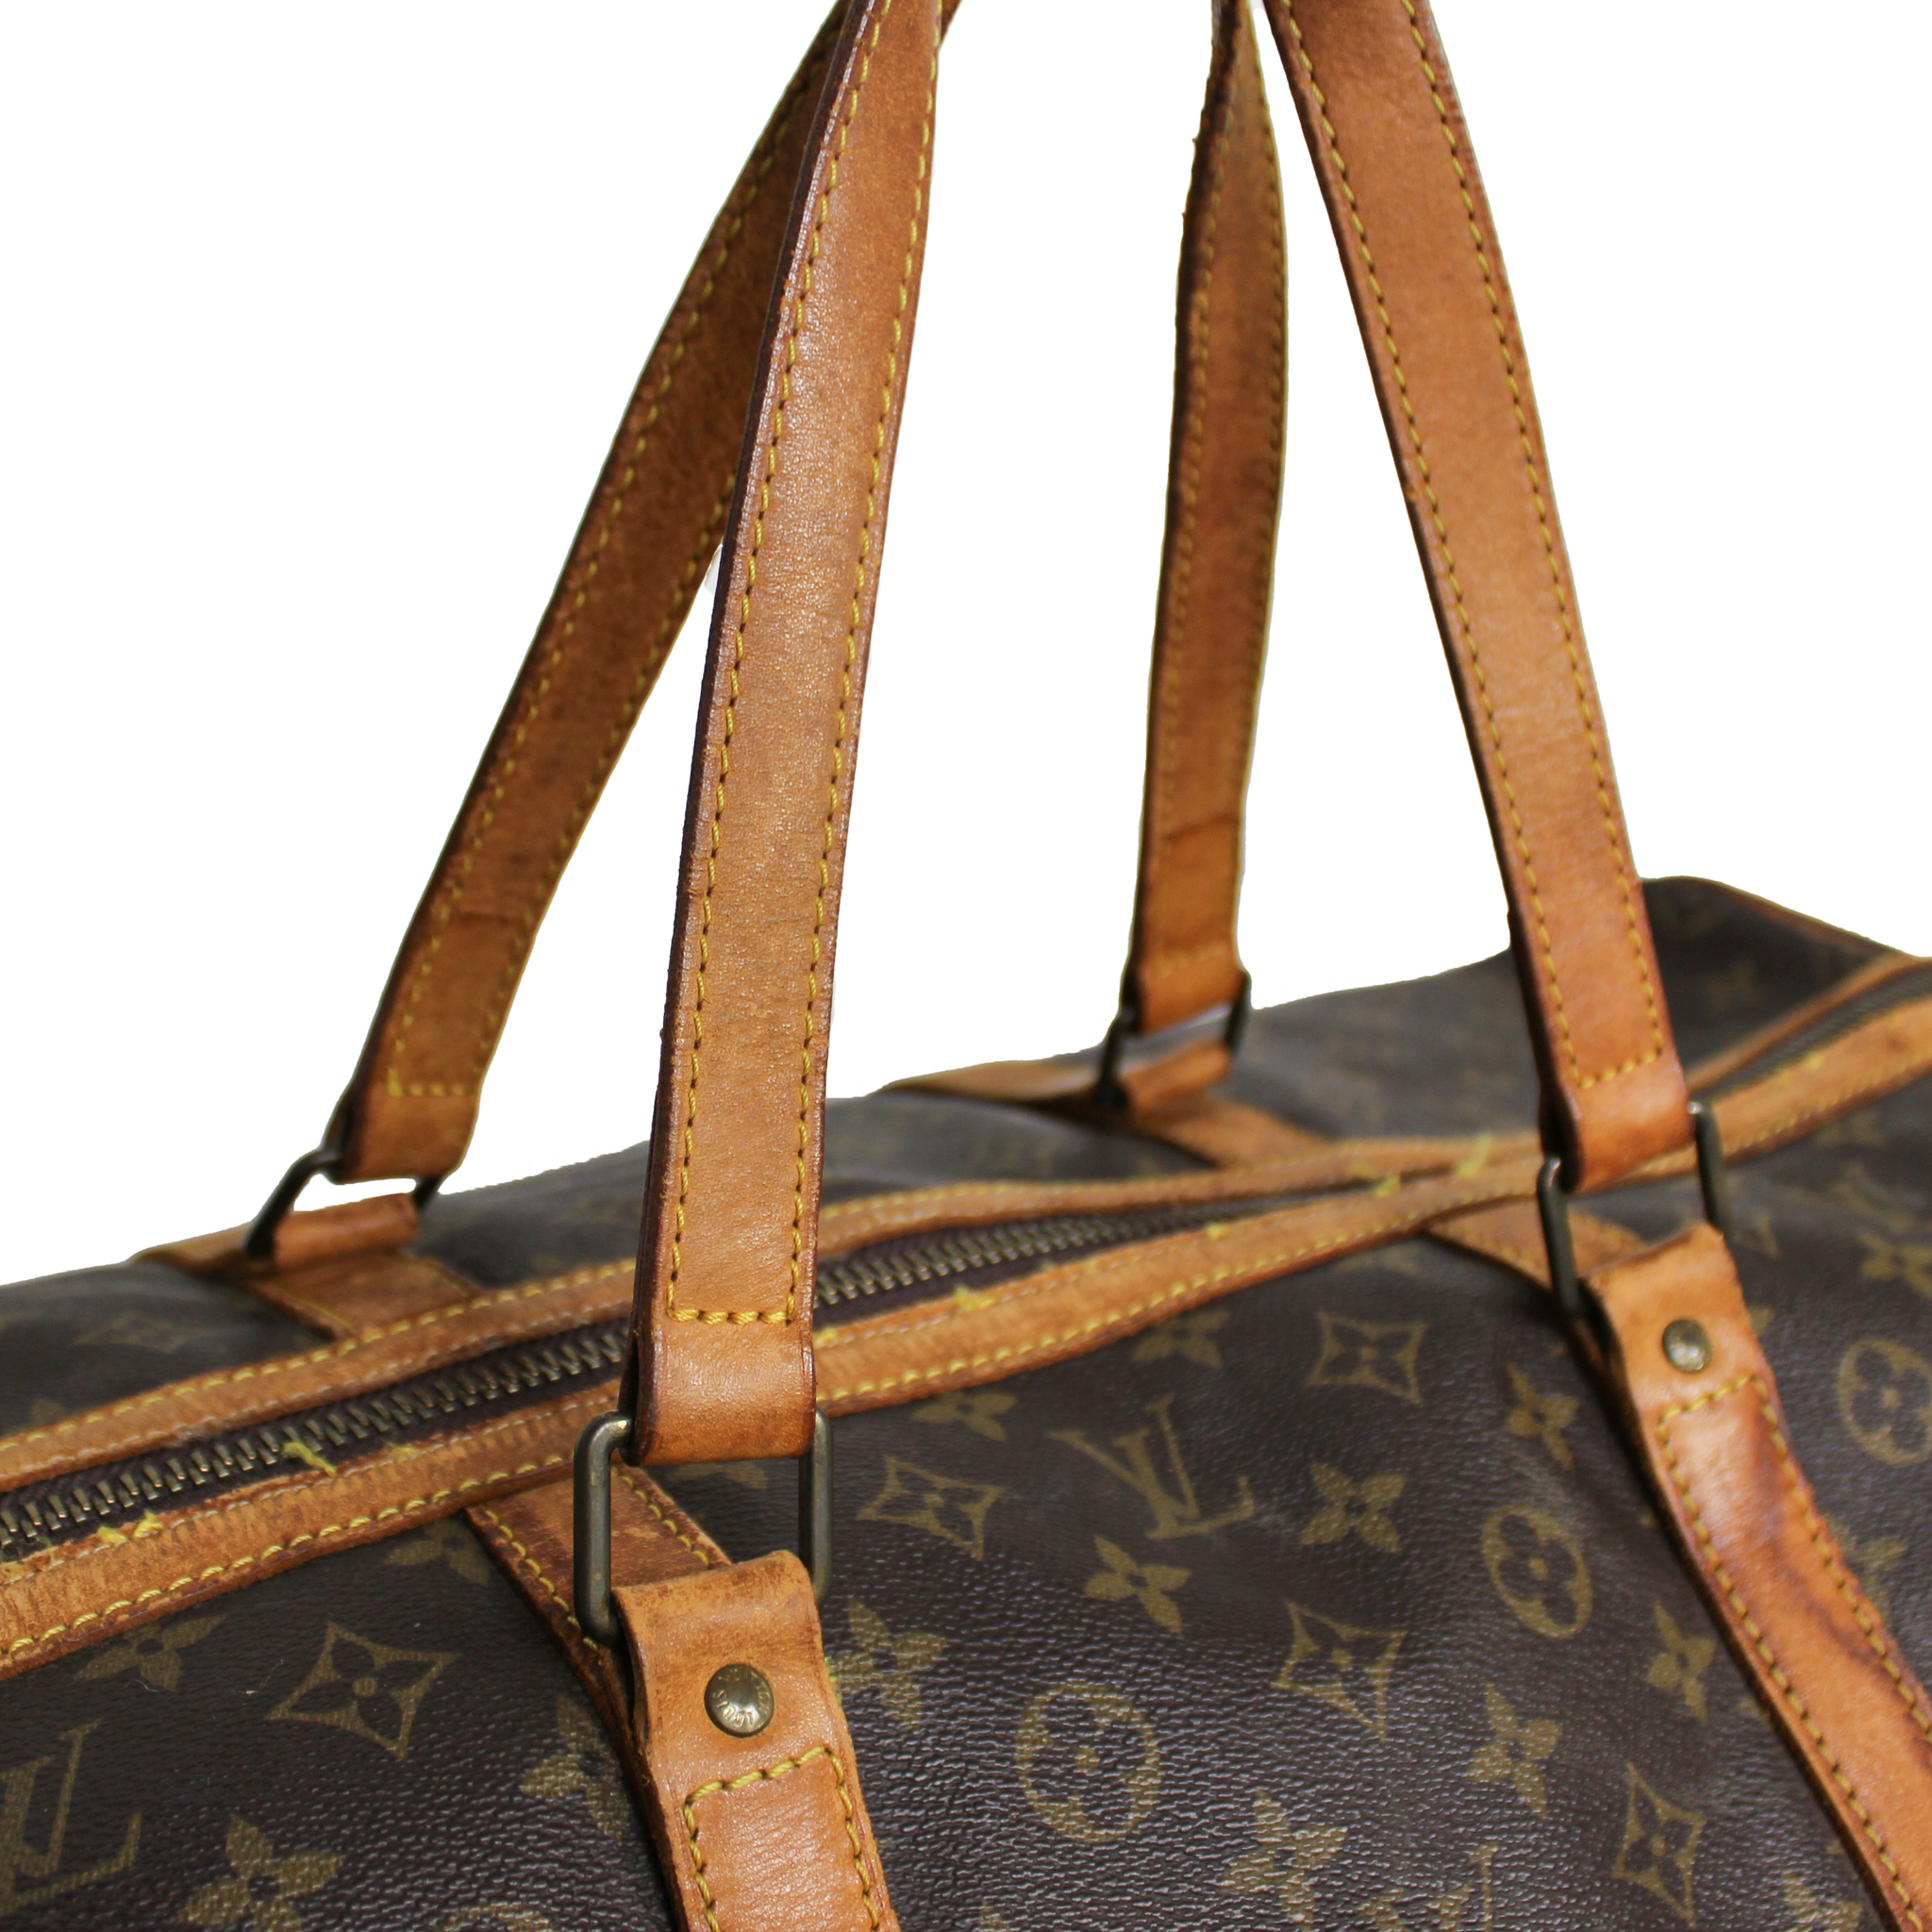 Louis Vuitton Väska "Sac Souple 55" (Väska)